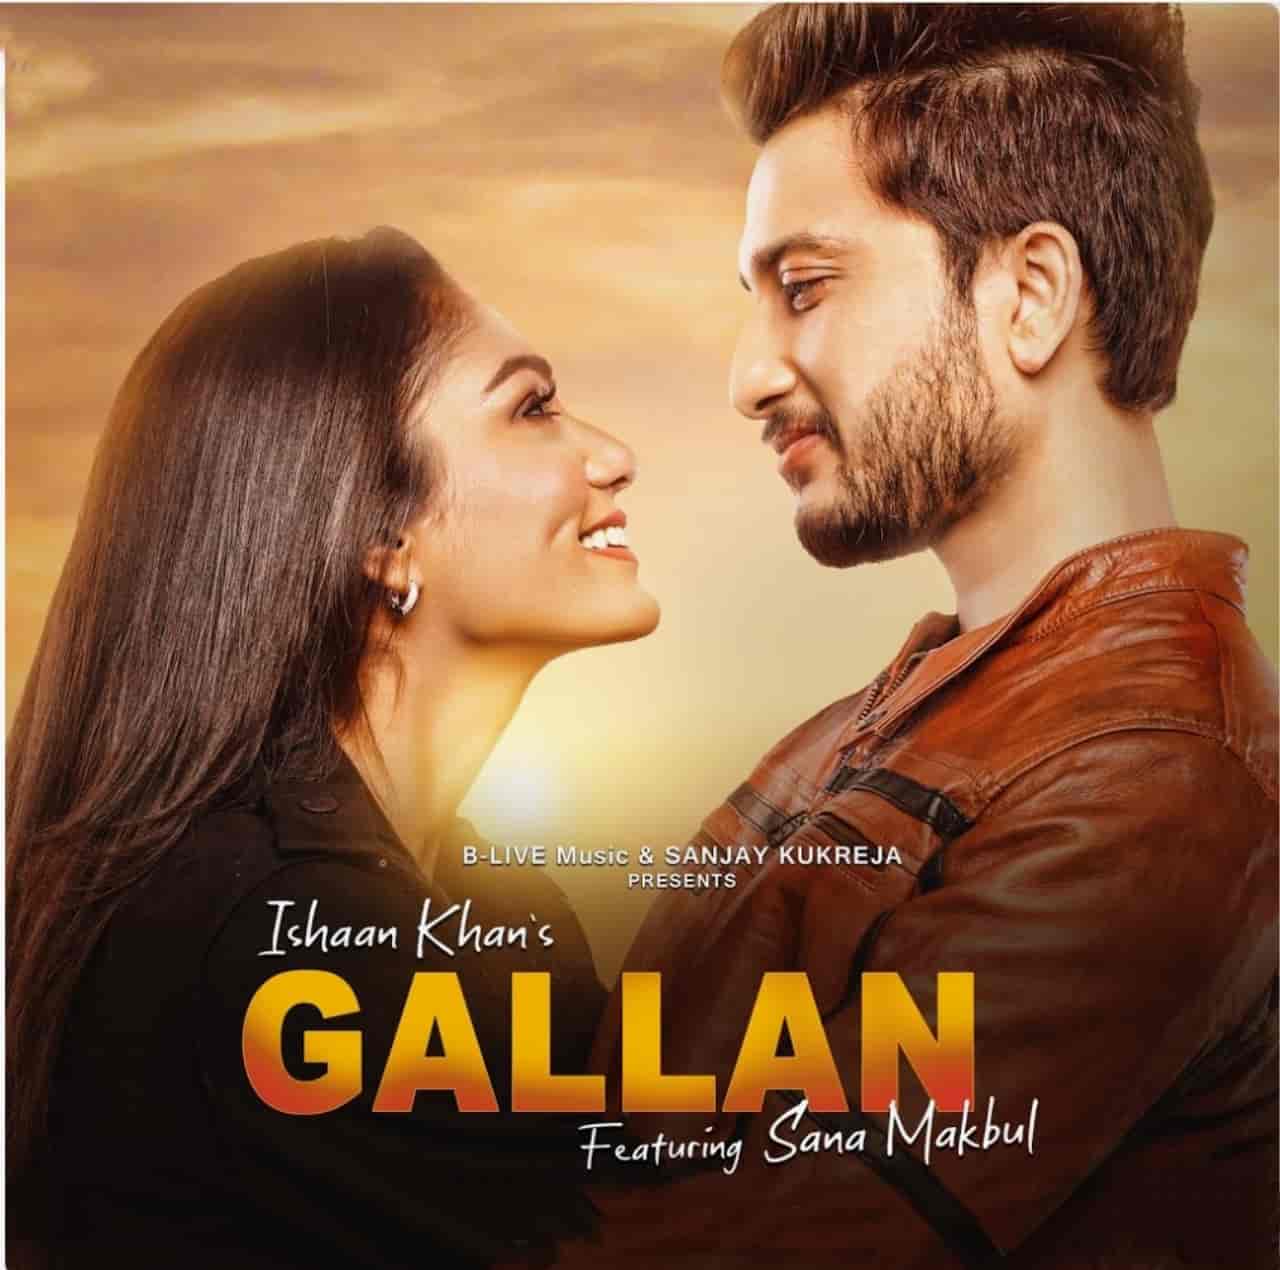 Gallan Punjabi Song Image Features Ishaan Khan And Sana Makbul